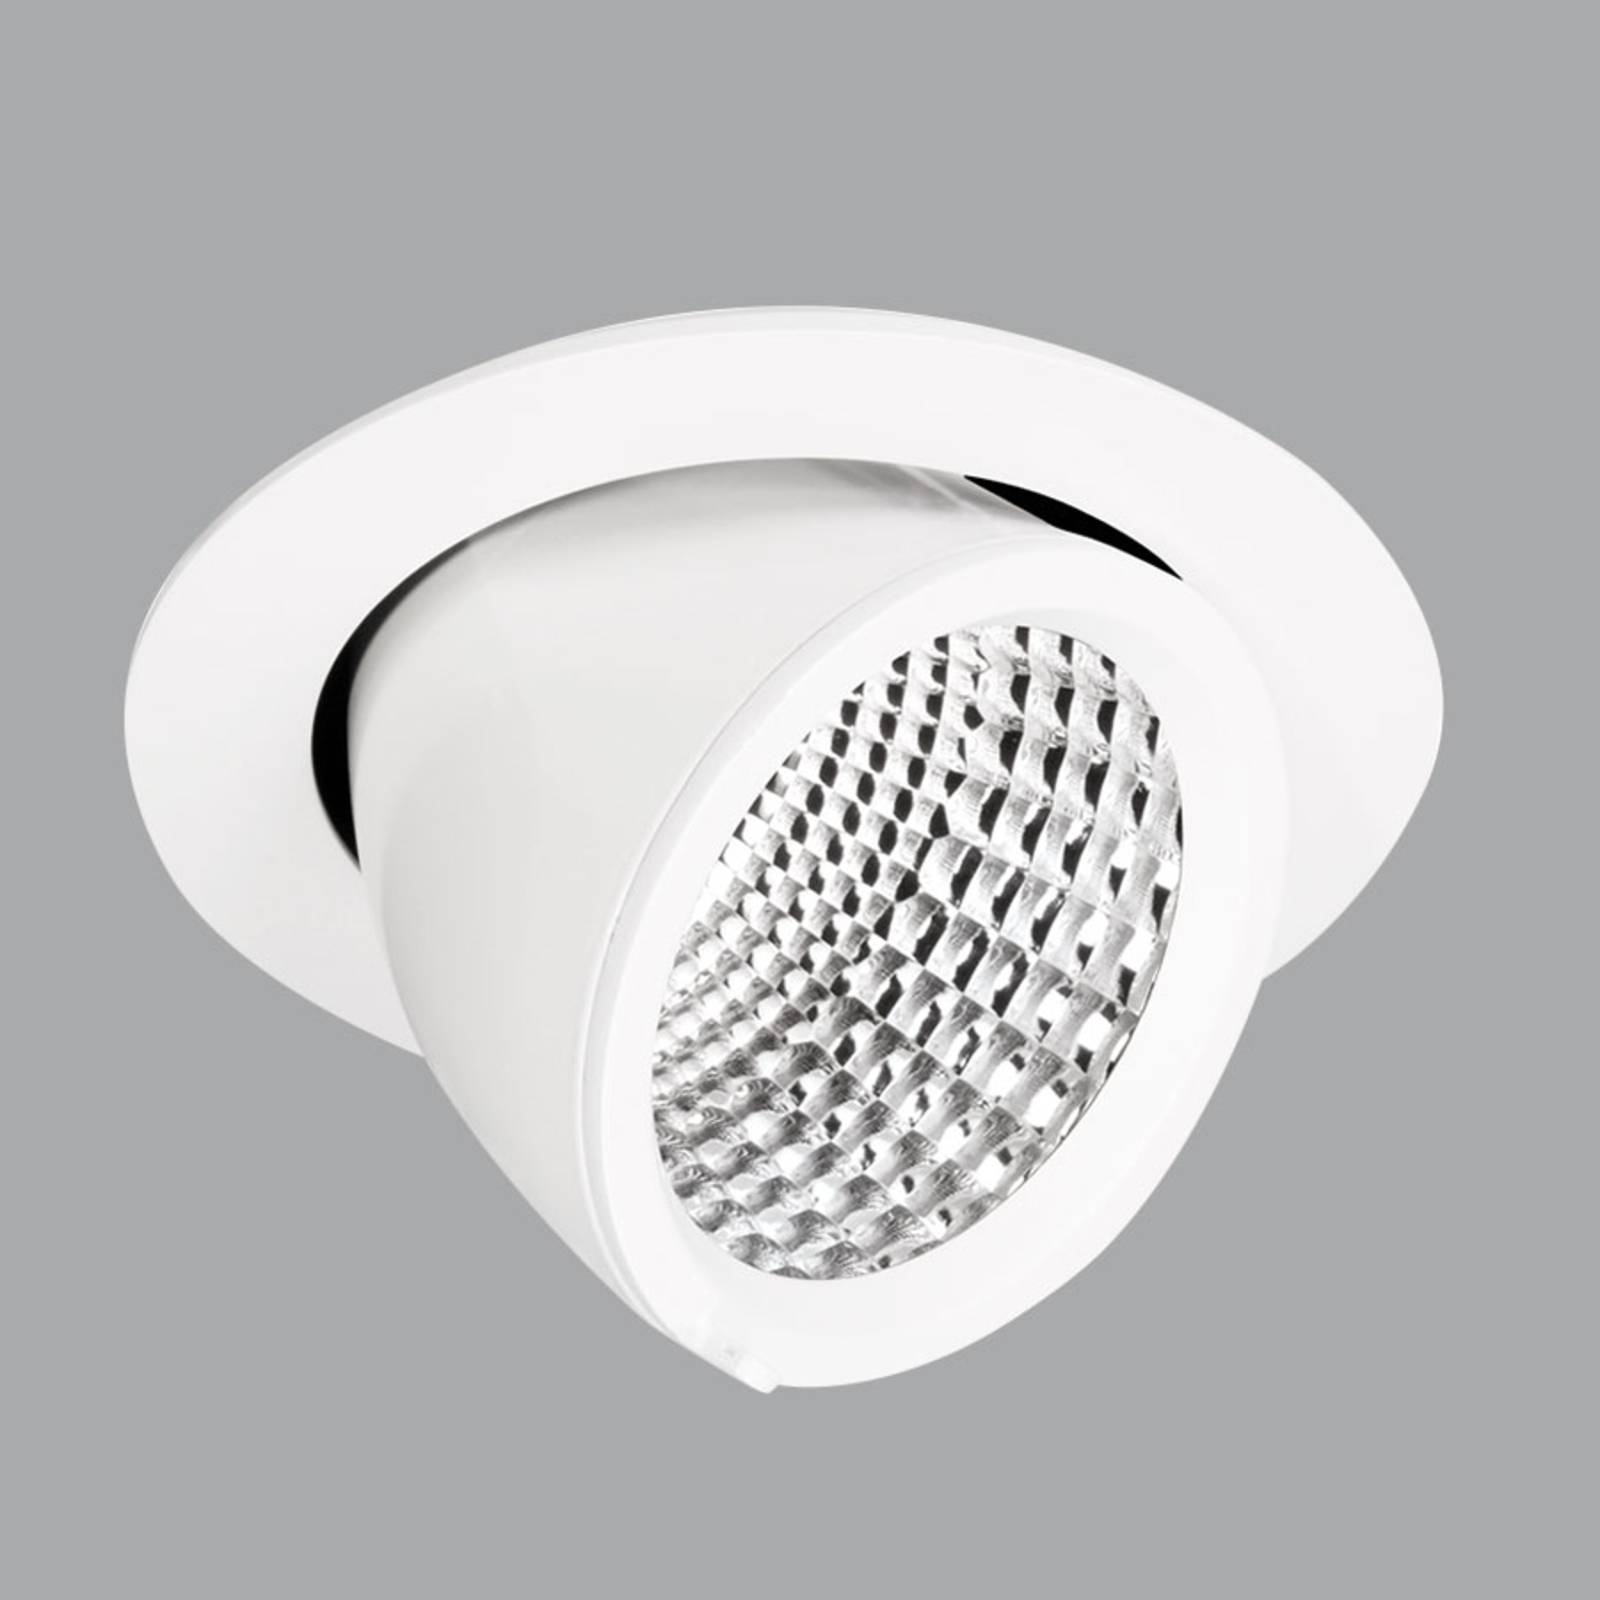 Spot Reflektor - Einbaulampe EB433 LED weiß 3.000K von Performance in Lighting